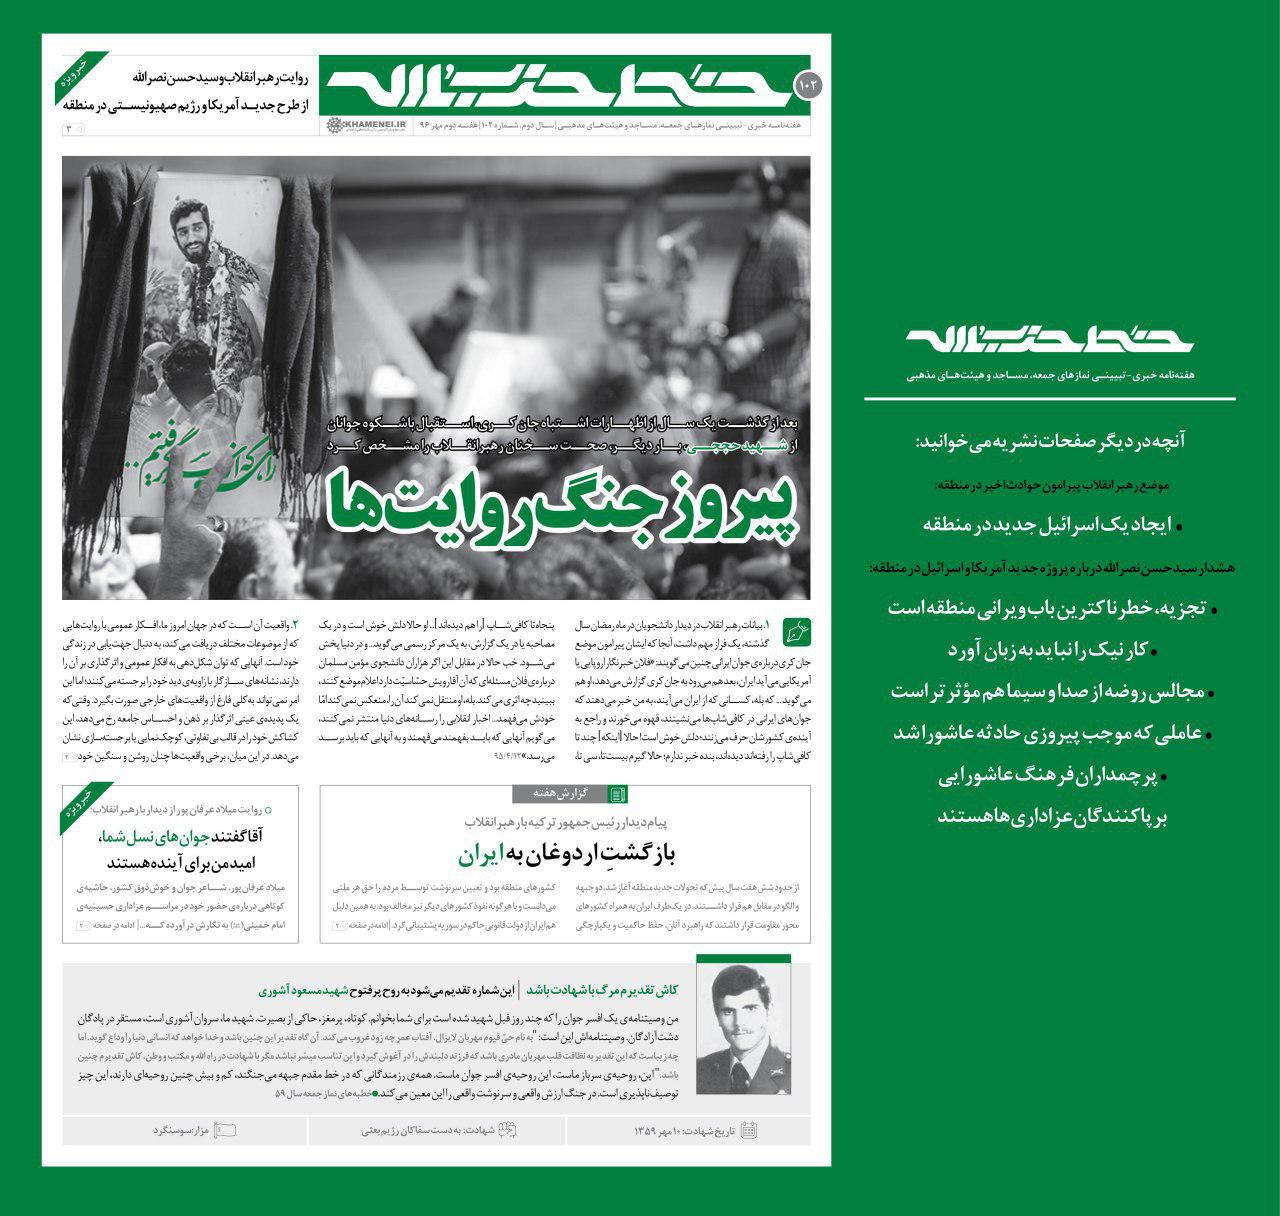 پیروز جنگ روایت ها در شماره جدید خط حزب الله